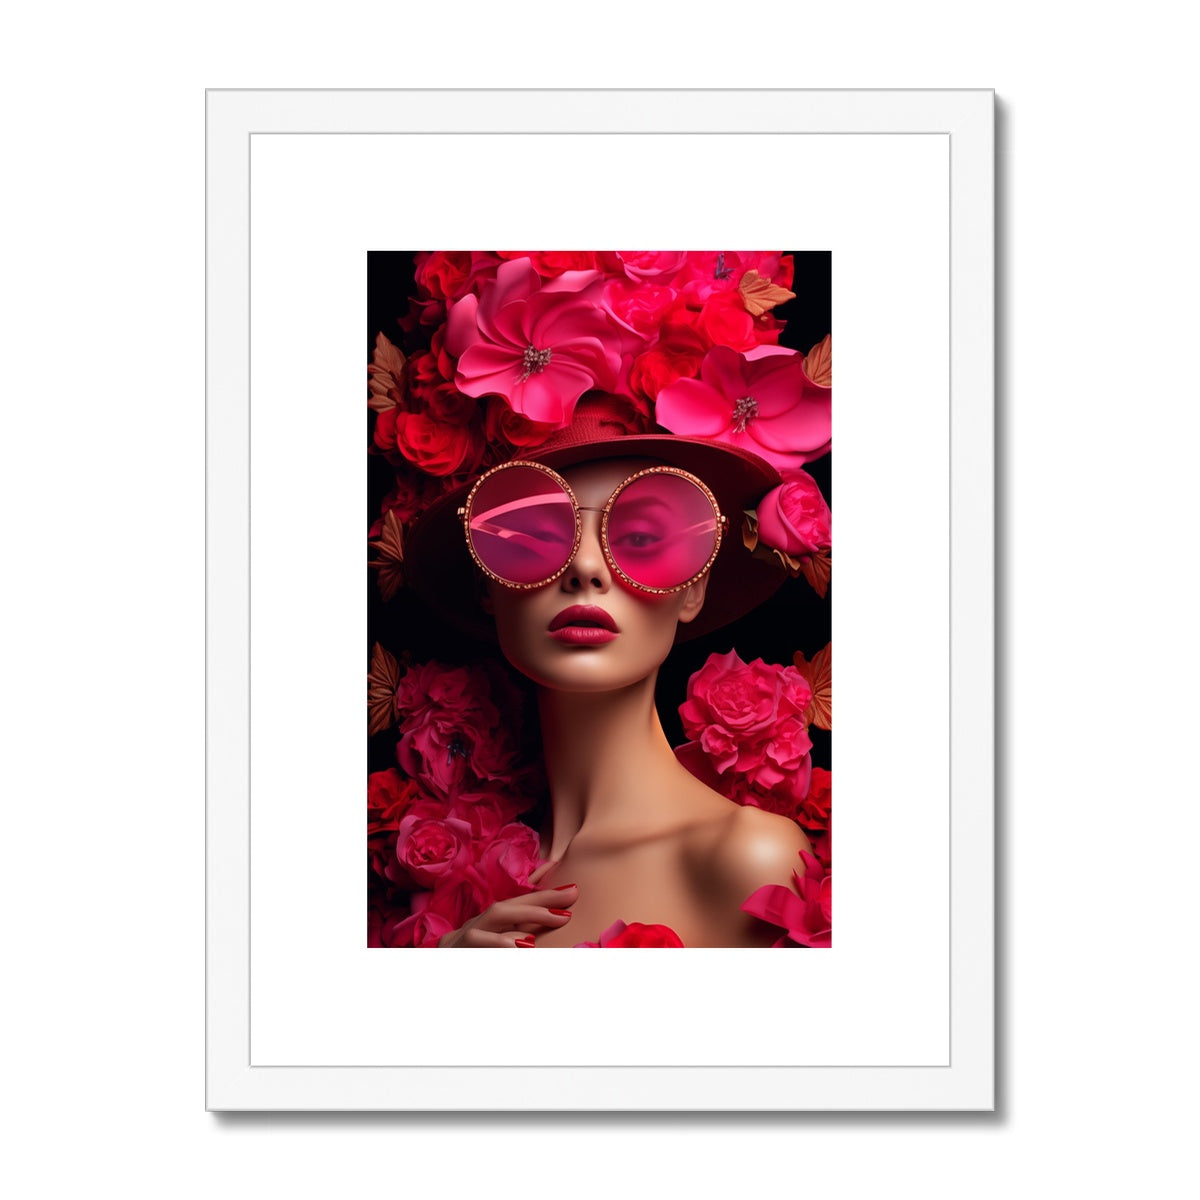 Framed & mounted print - 12x16 / white frame - fine art